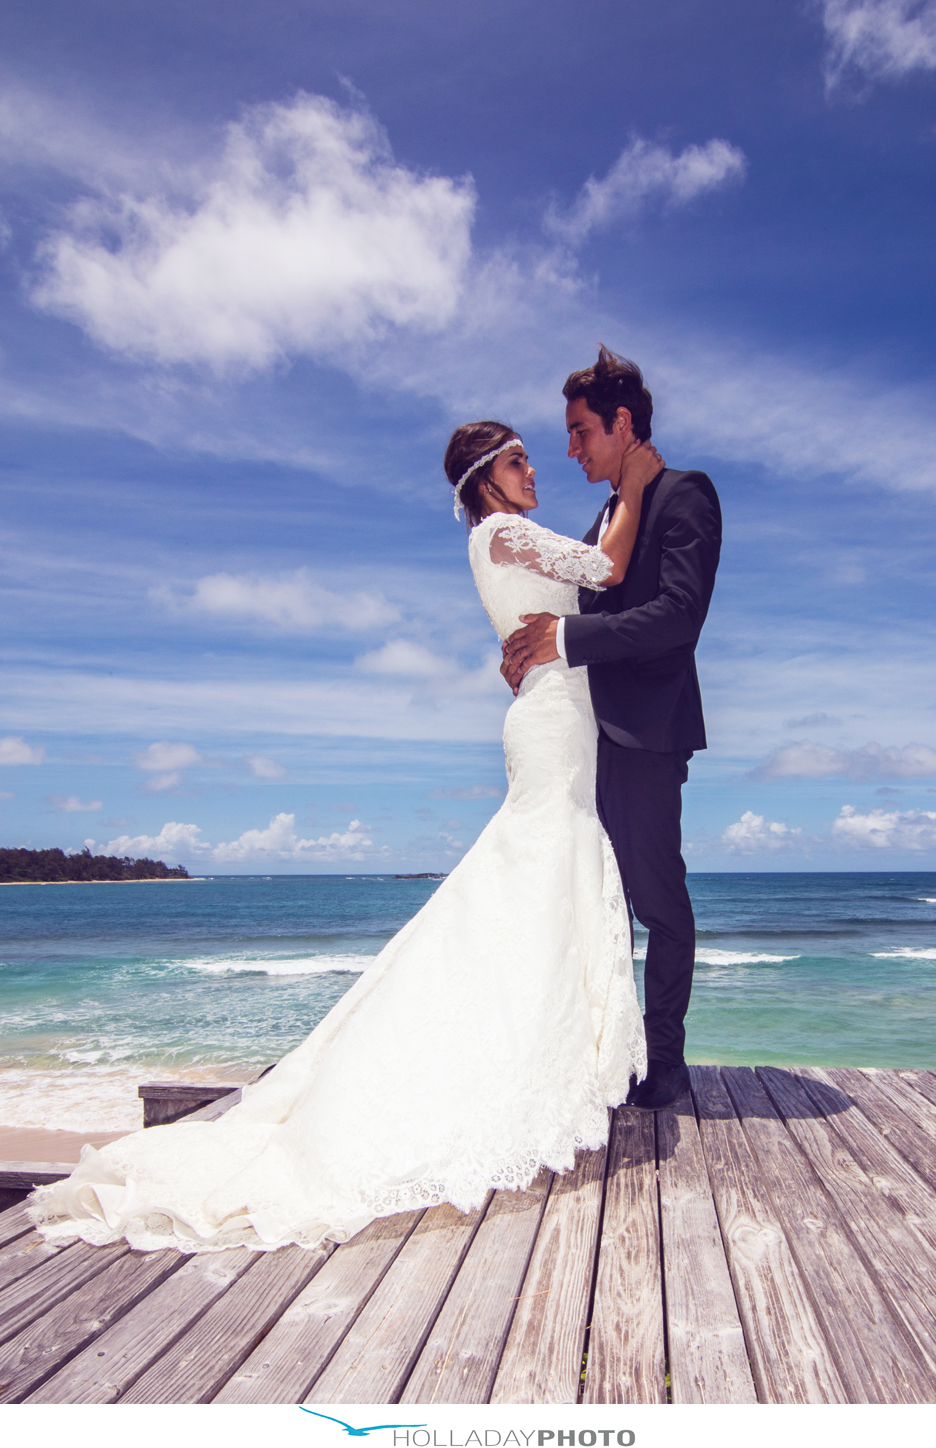 HAWAII WEDDING MAX + MONA LAIE HAWAII Hawaii Wedding Photography by Mark Holladay Lee